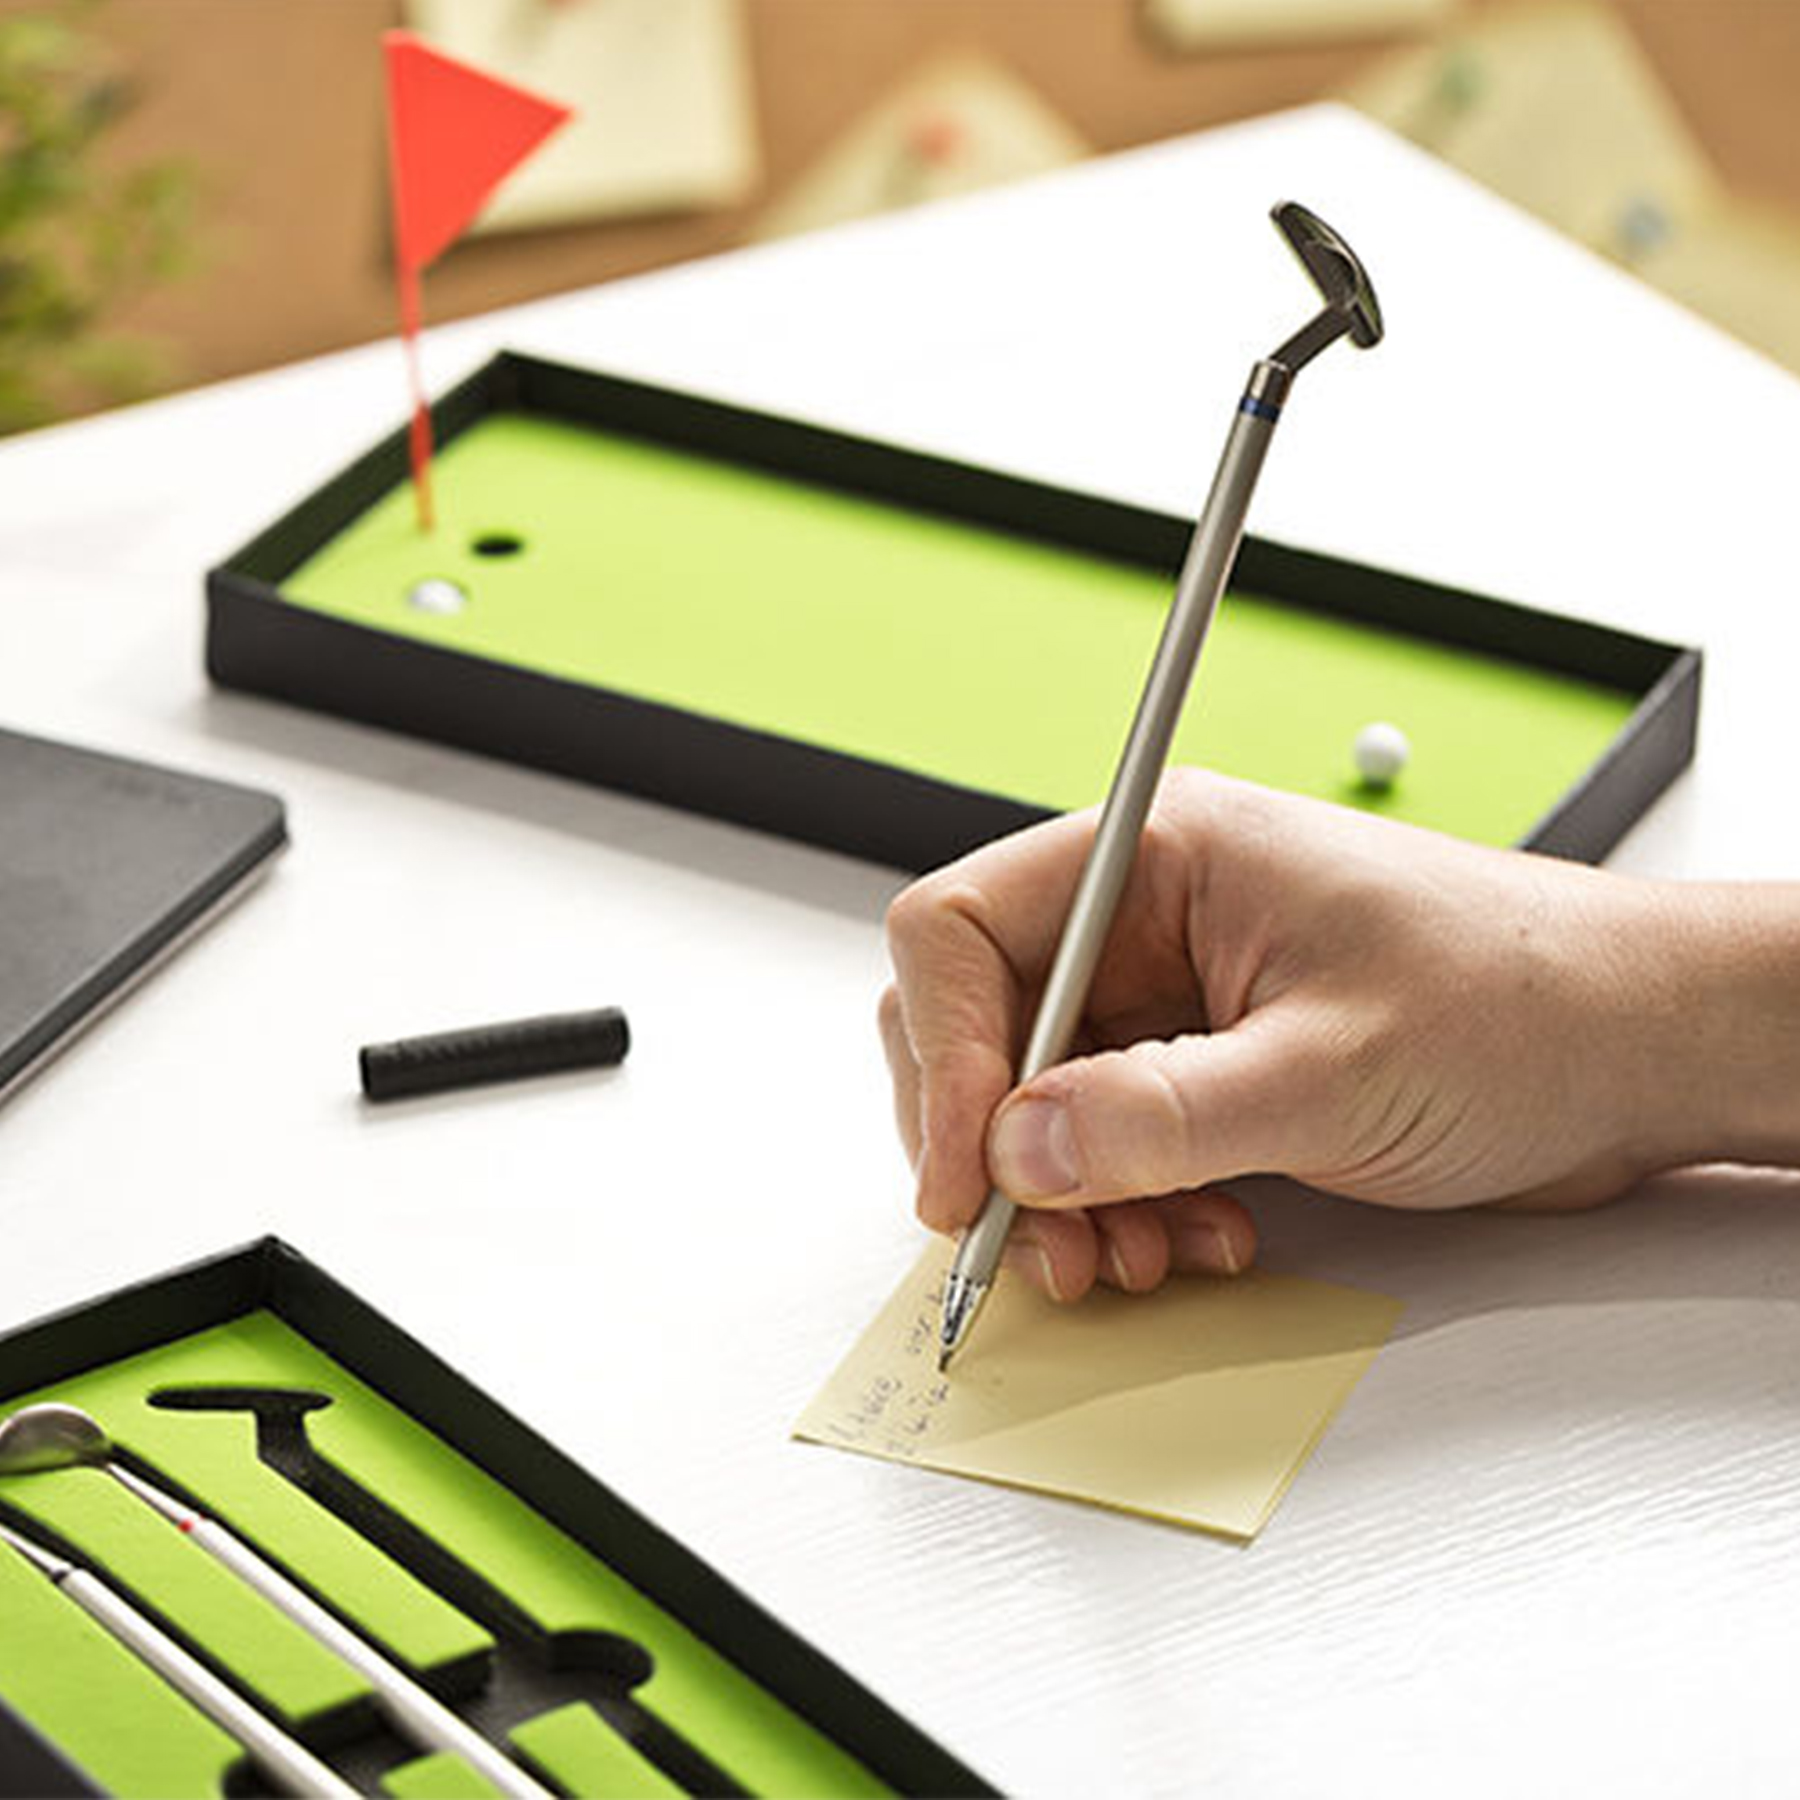 3 Kugelschreiber als Minigolf Bürospiel, Indoor Golf Tischspiel - witziges Schreibset in Golfschläger Optik, inklusive Mini Golftisch und Golfbäll